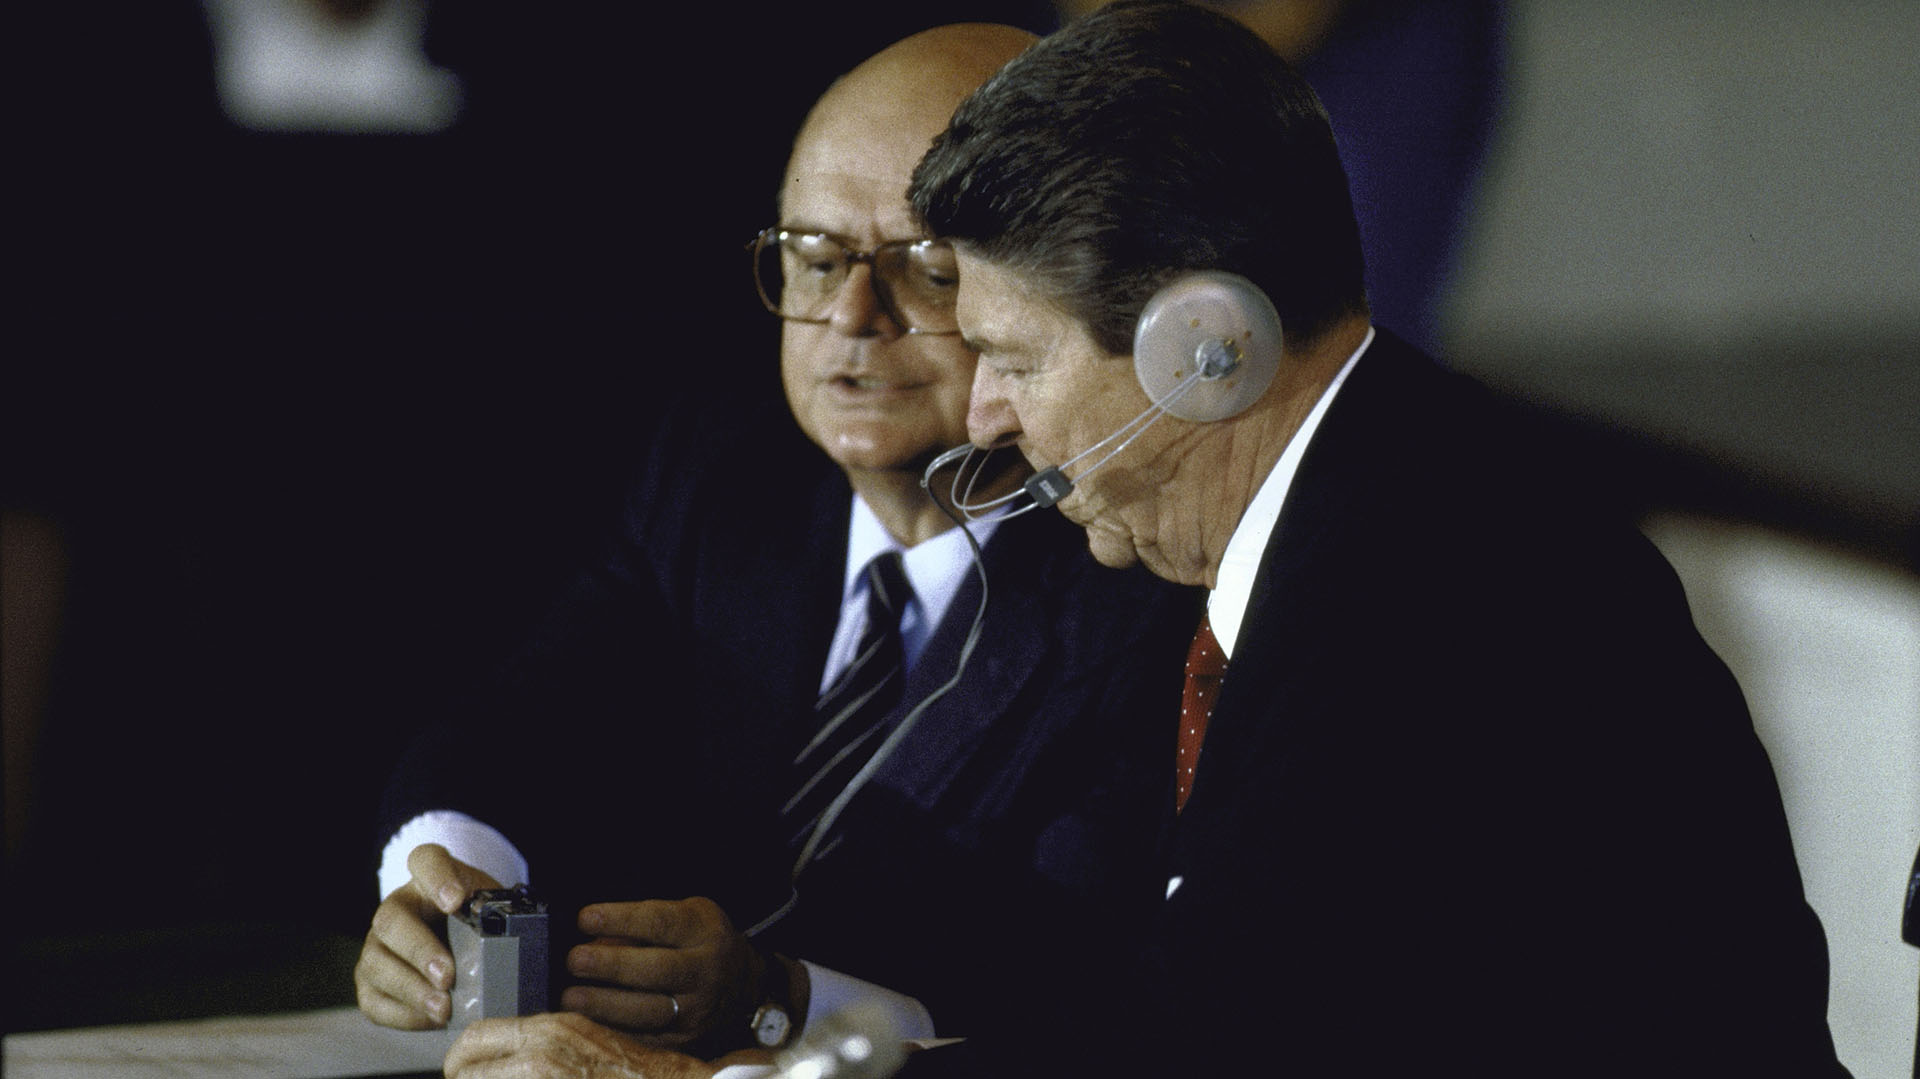  El presidente Ronald W. Reagan usando audífonos y recibiendo instrucciones del Secretario General de la OEA, Joao Clemente Baena Soares, sobre cómo usar su dispositivo de traducción durante una reunión de la OEA (Dirck Halstead/Getty Images)